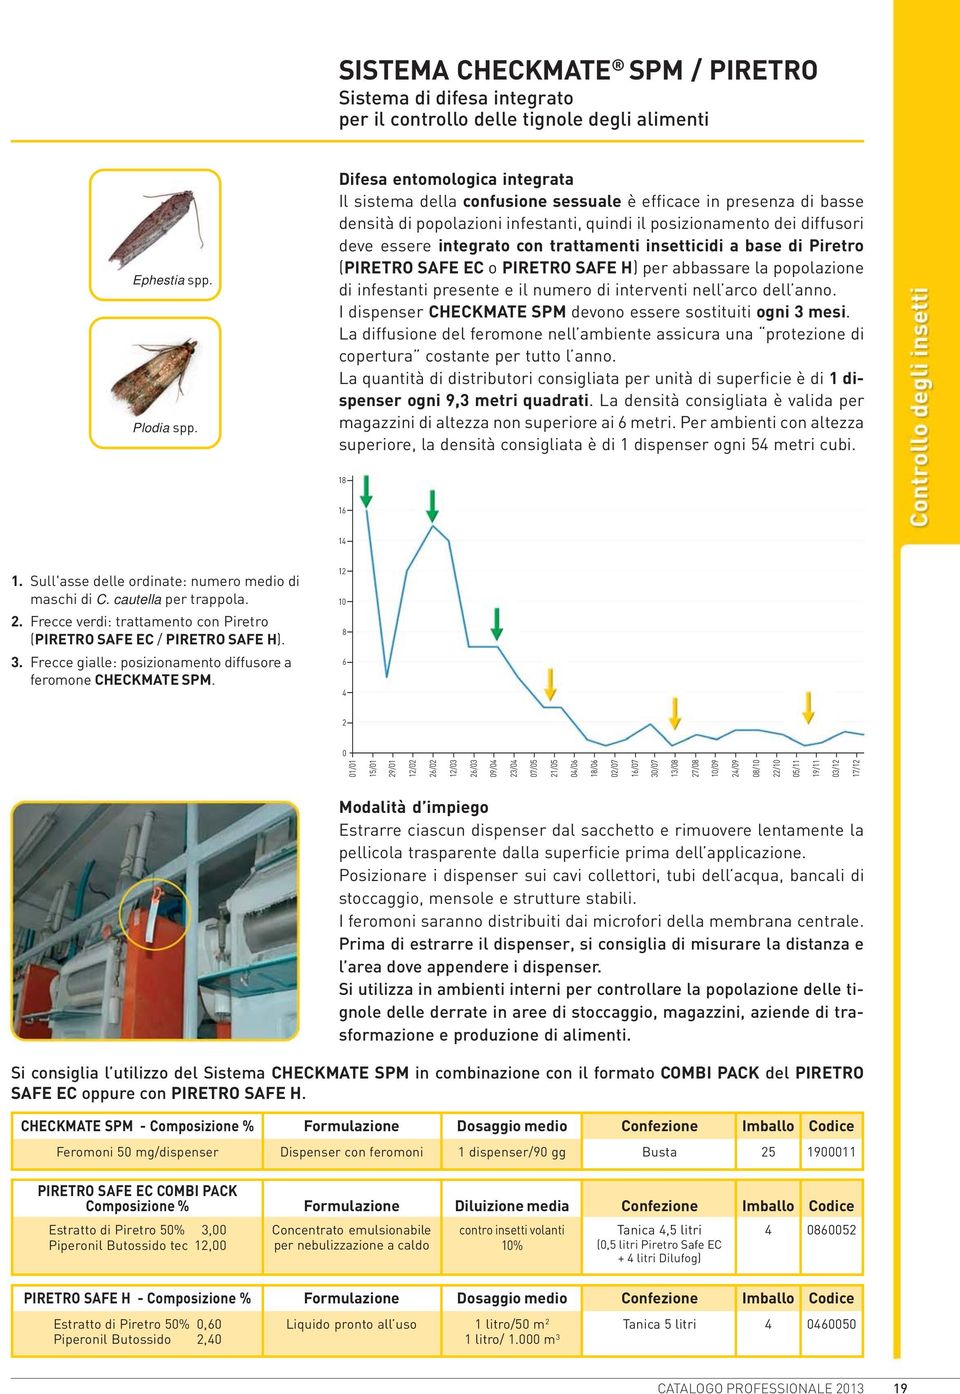 trattamenti insetticidi a base di Piretro (PIRETRO SAFE EC o PIRETRO SAFE H) per abbassare la popolazione di infestanti presente e il numero di interventi nell arco dell anno.